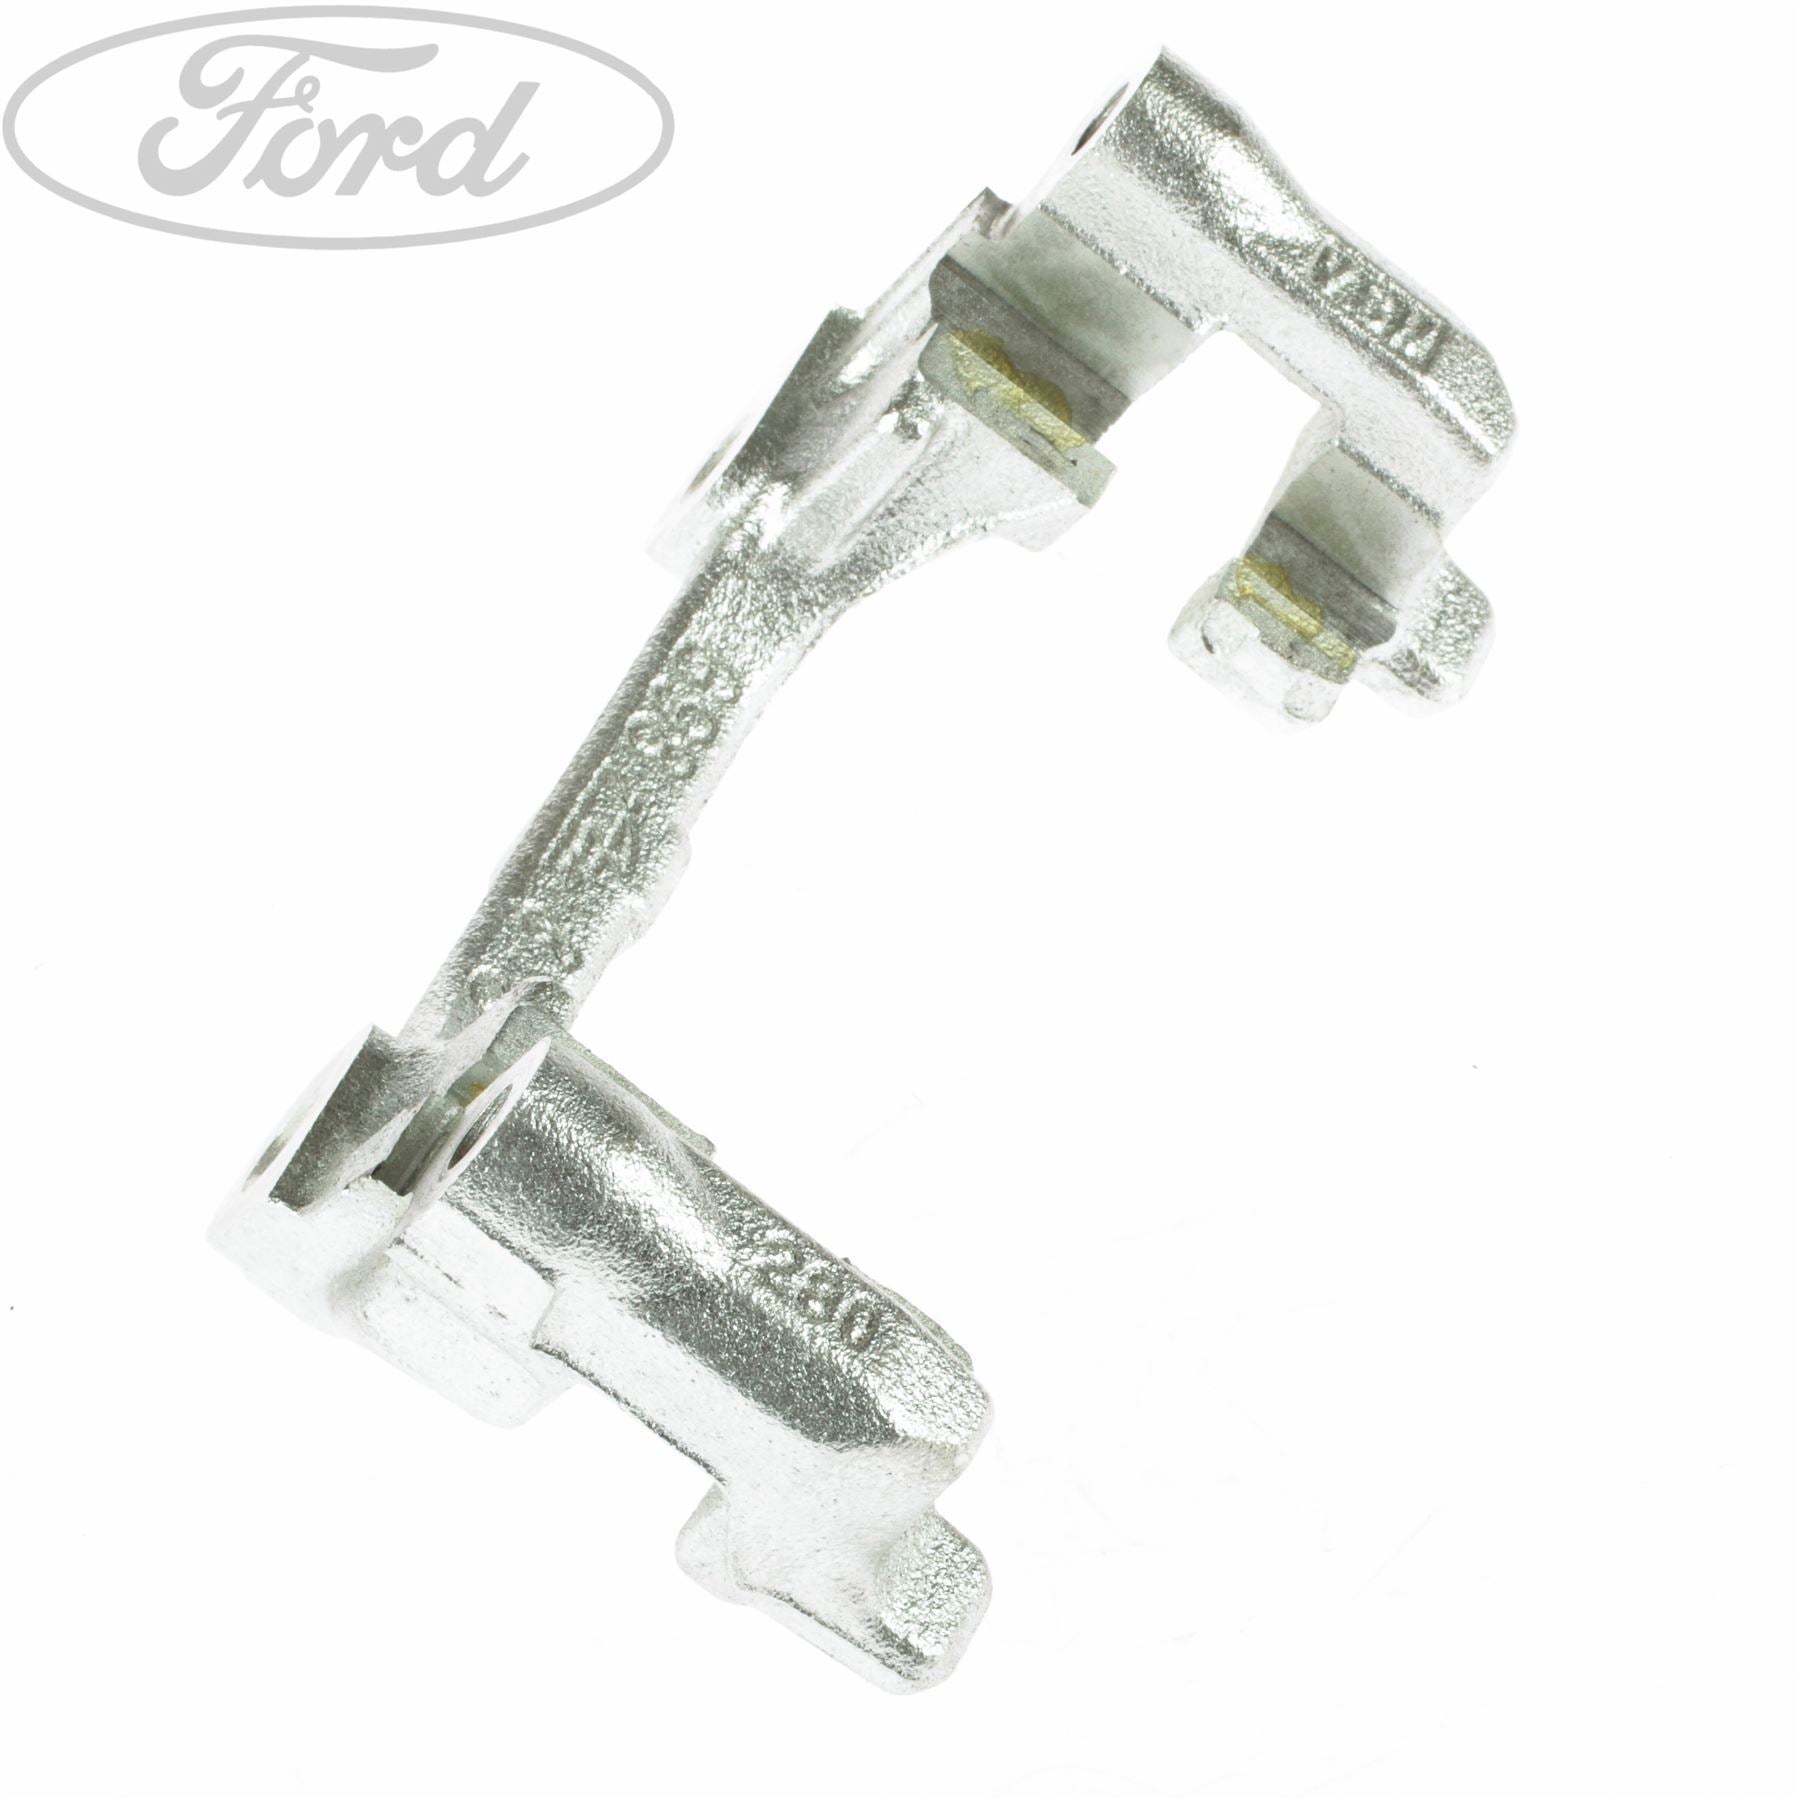 Ford Bremssattel-Teile, Bremssattel-Ersatzteile für Ford